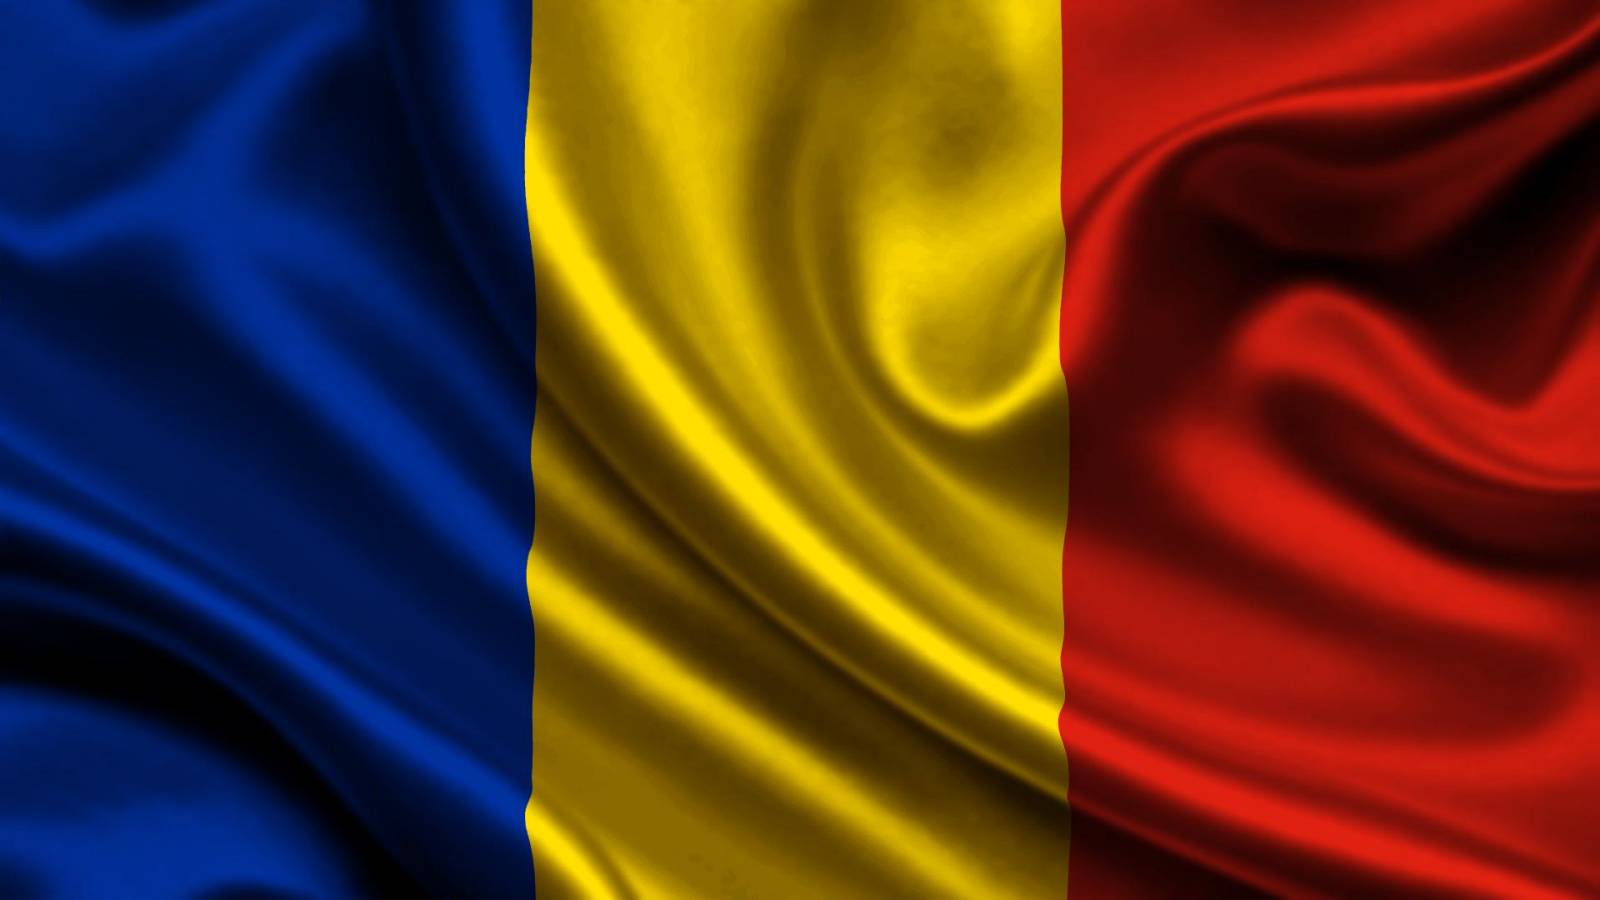 Roemenië Wave 4 Record brengt beperkingen met zich mee